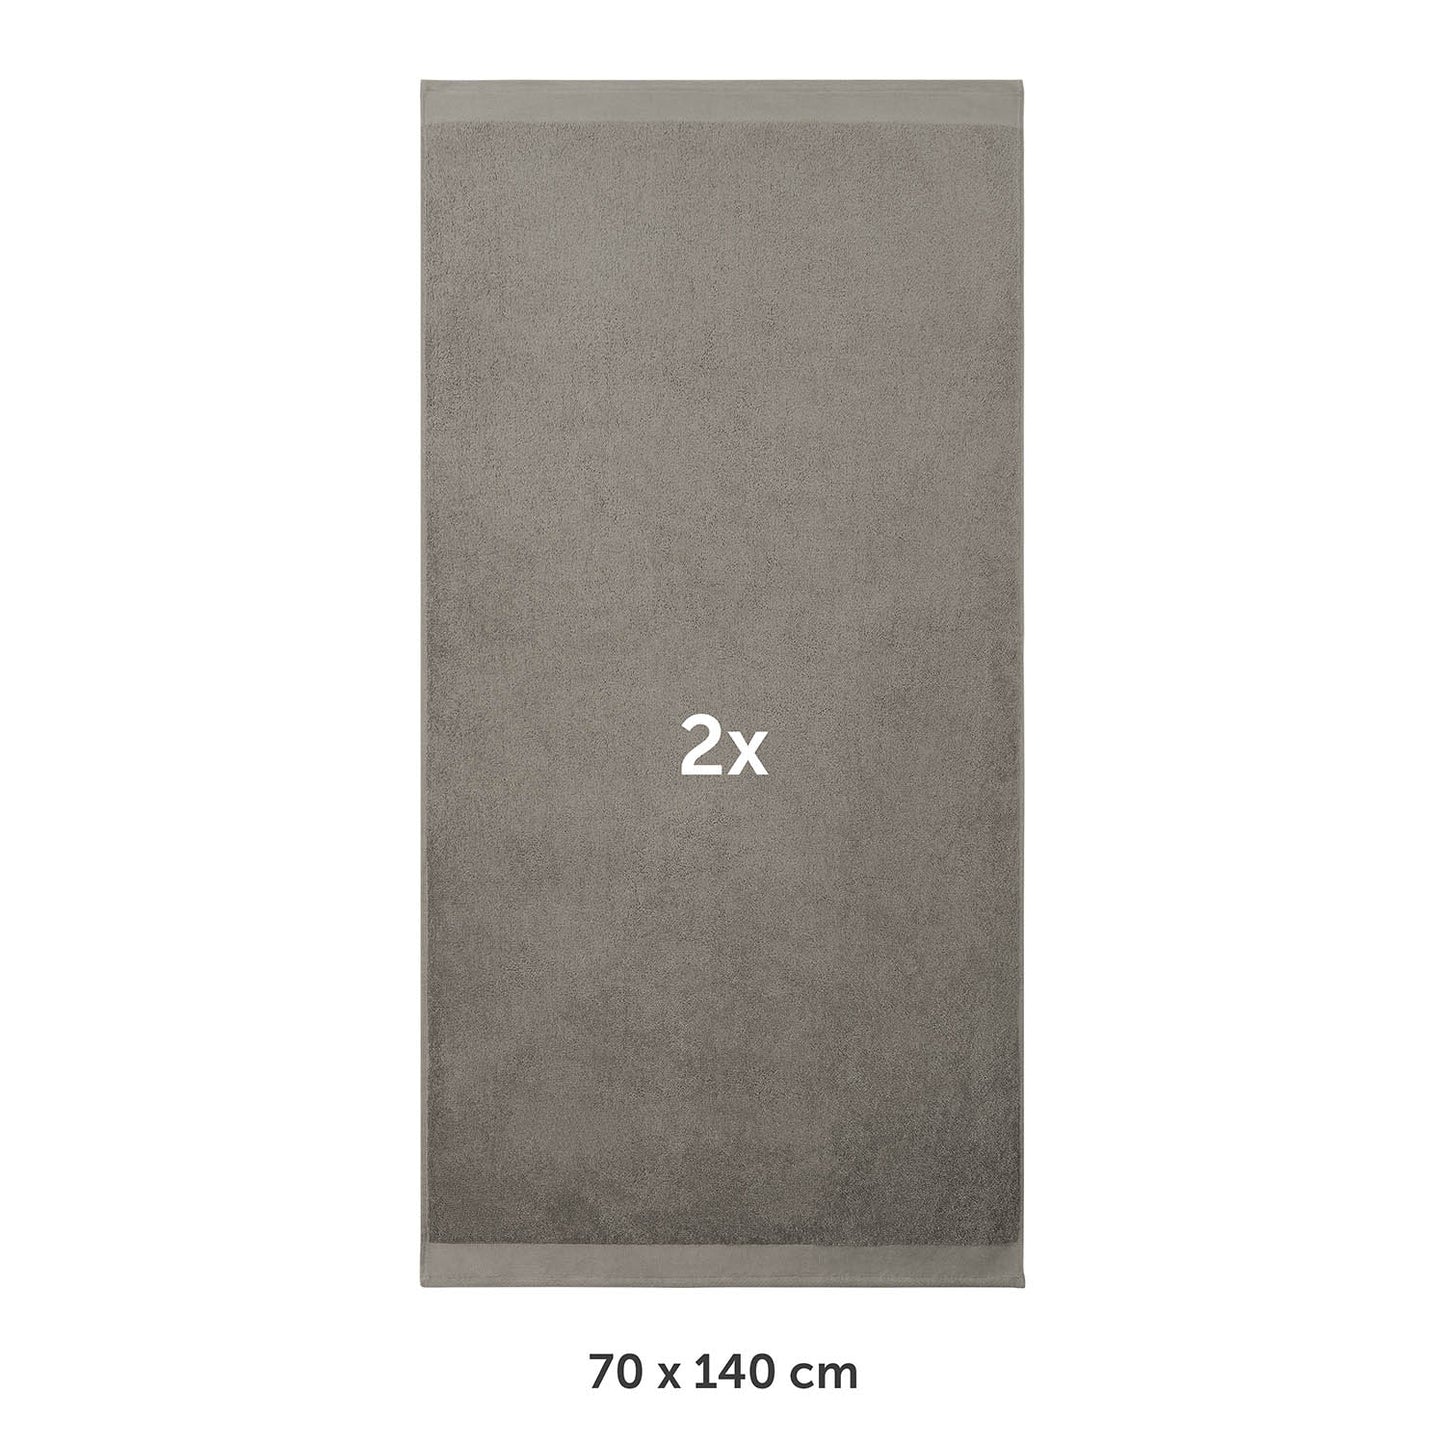 Badetuch Set aus Frottee, 2x 70x140cm